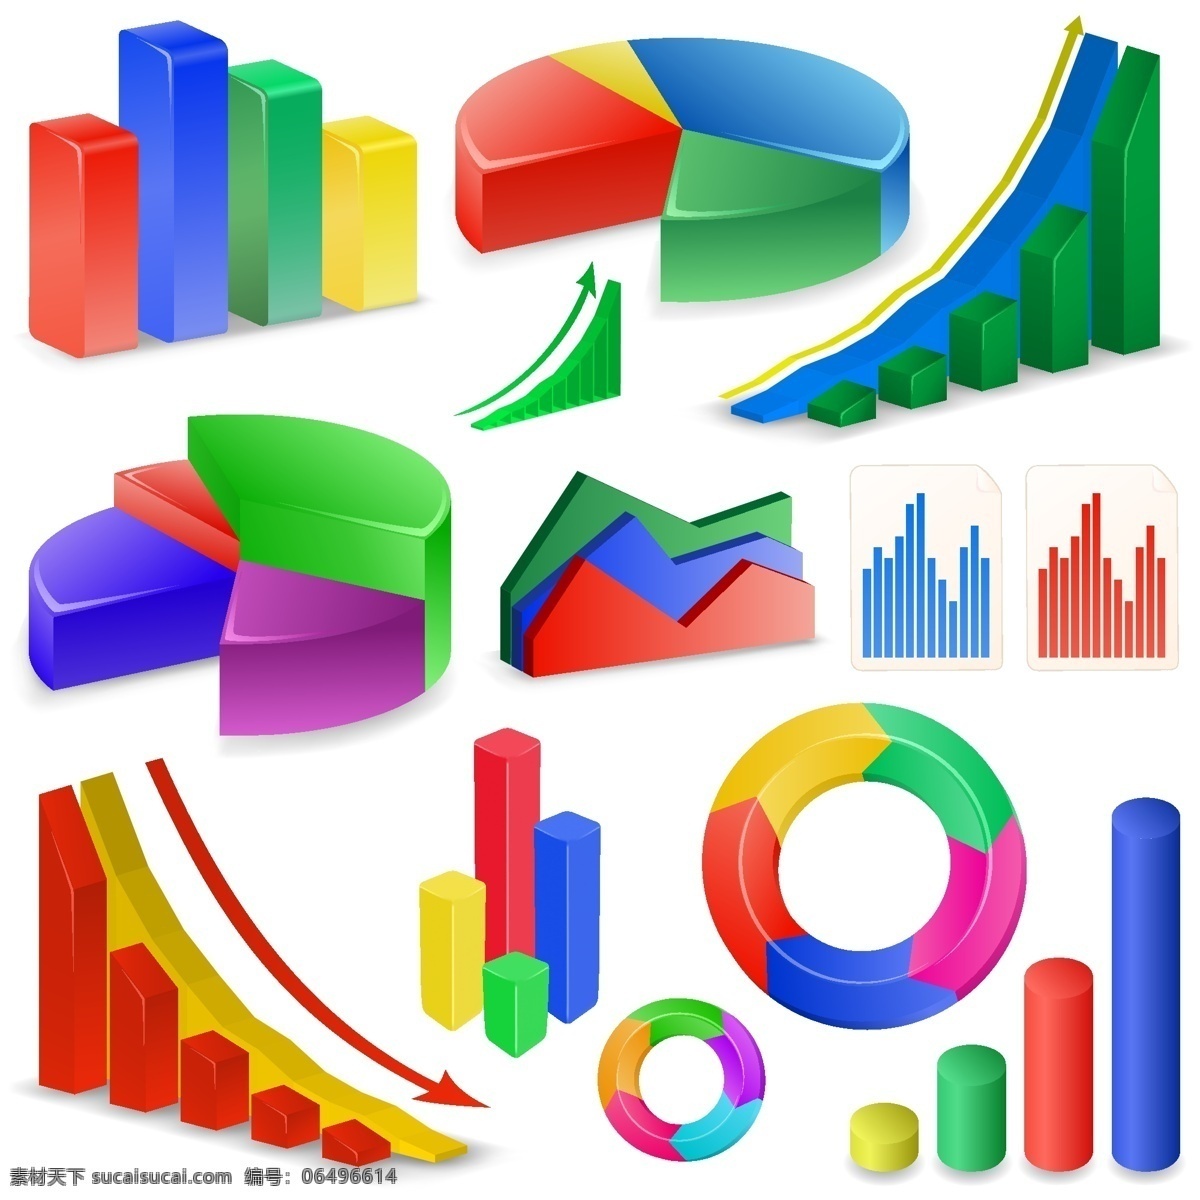 立体 数据统计 图标 矢量 财务数据统计 统计图 示意图 饼图 矢量素材 3d设计